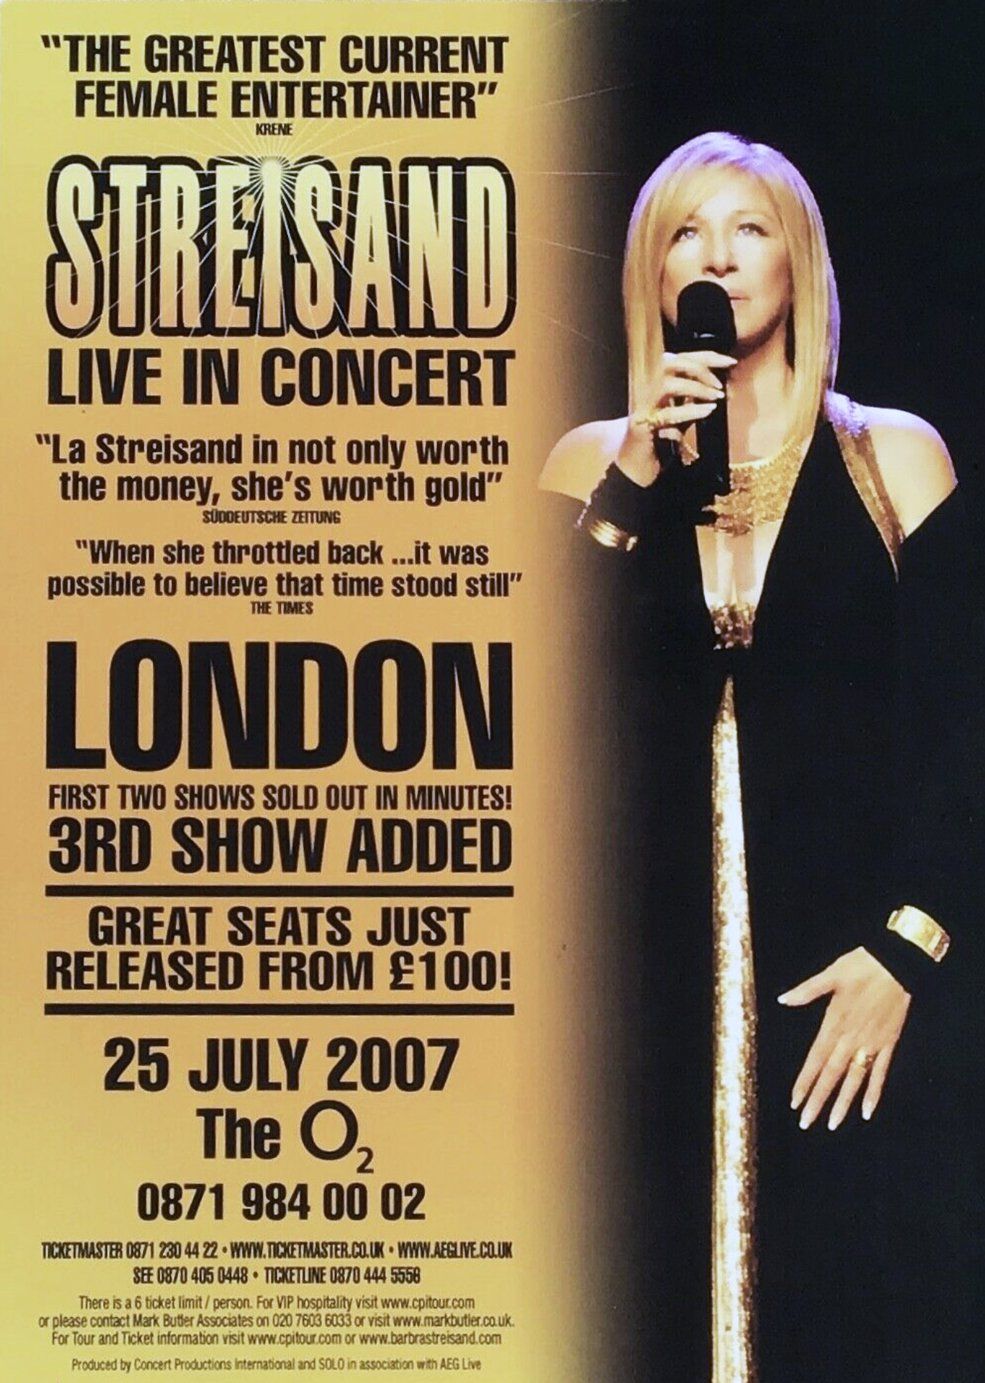 2007 London poster for Barbra Streisand